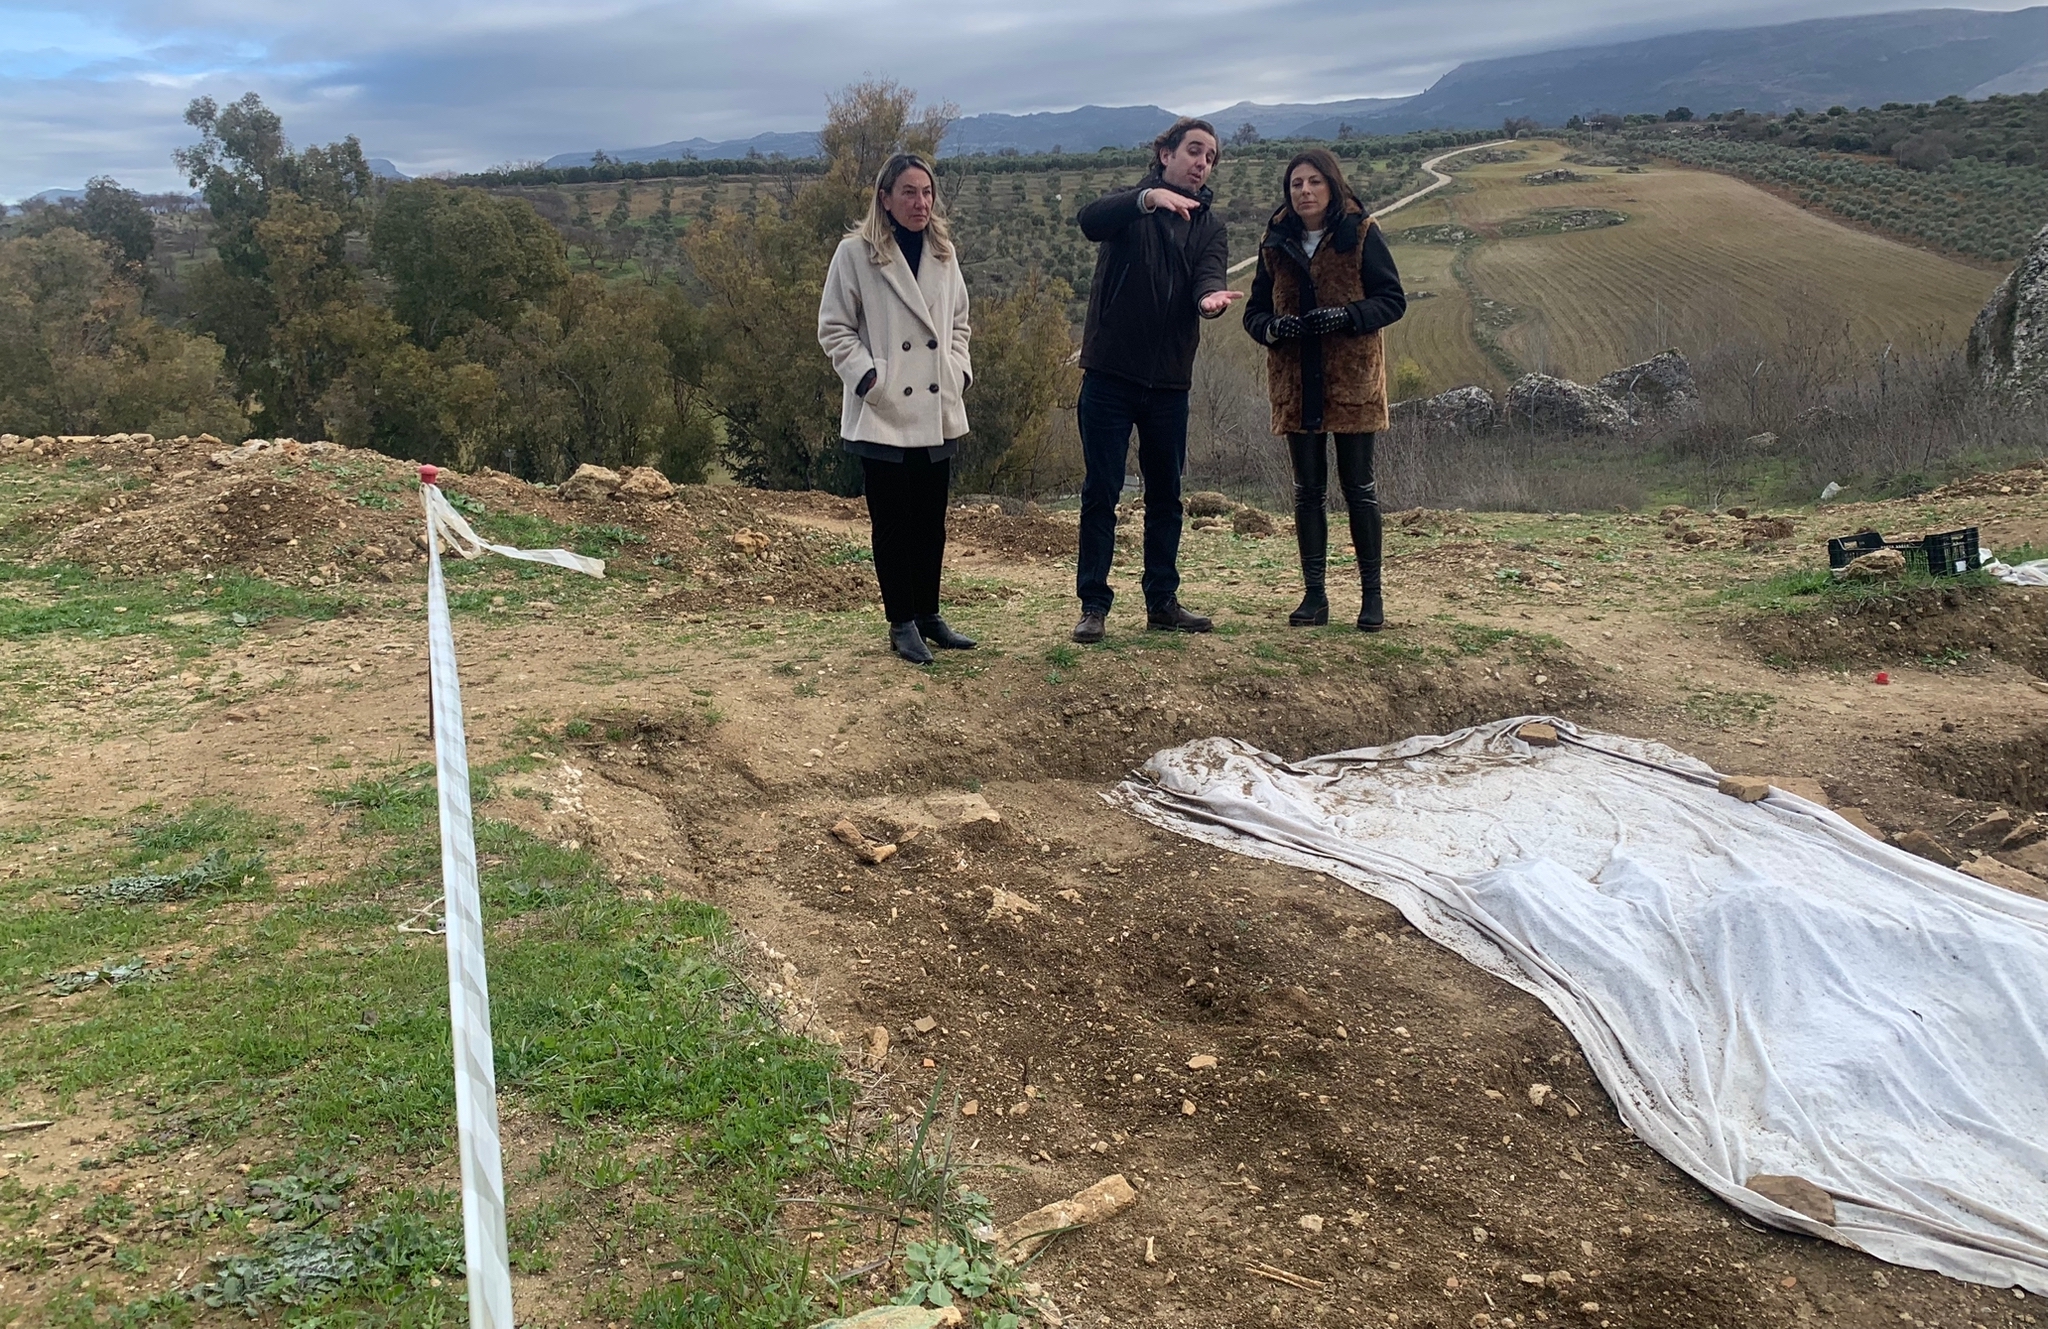 Prorrogan las excavaciones arqueológicas en una parcela tras el hallazgo de un cementerio andalusí